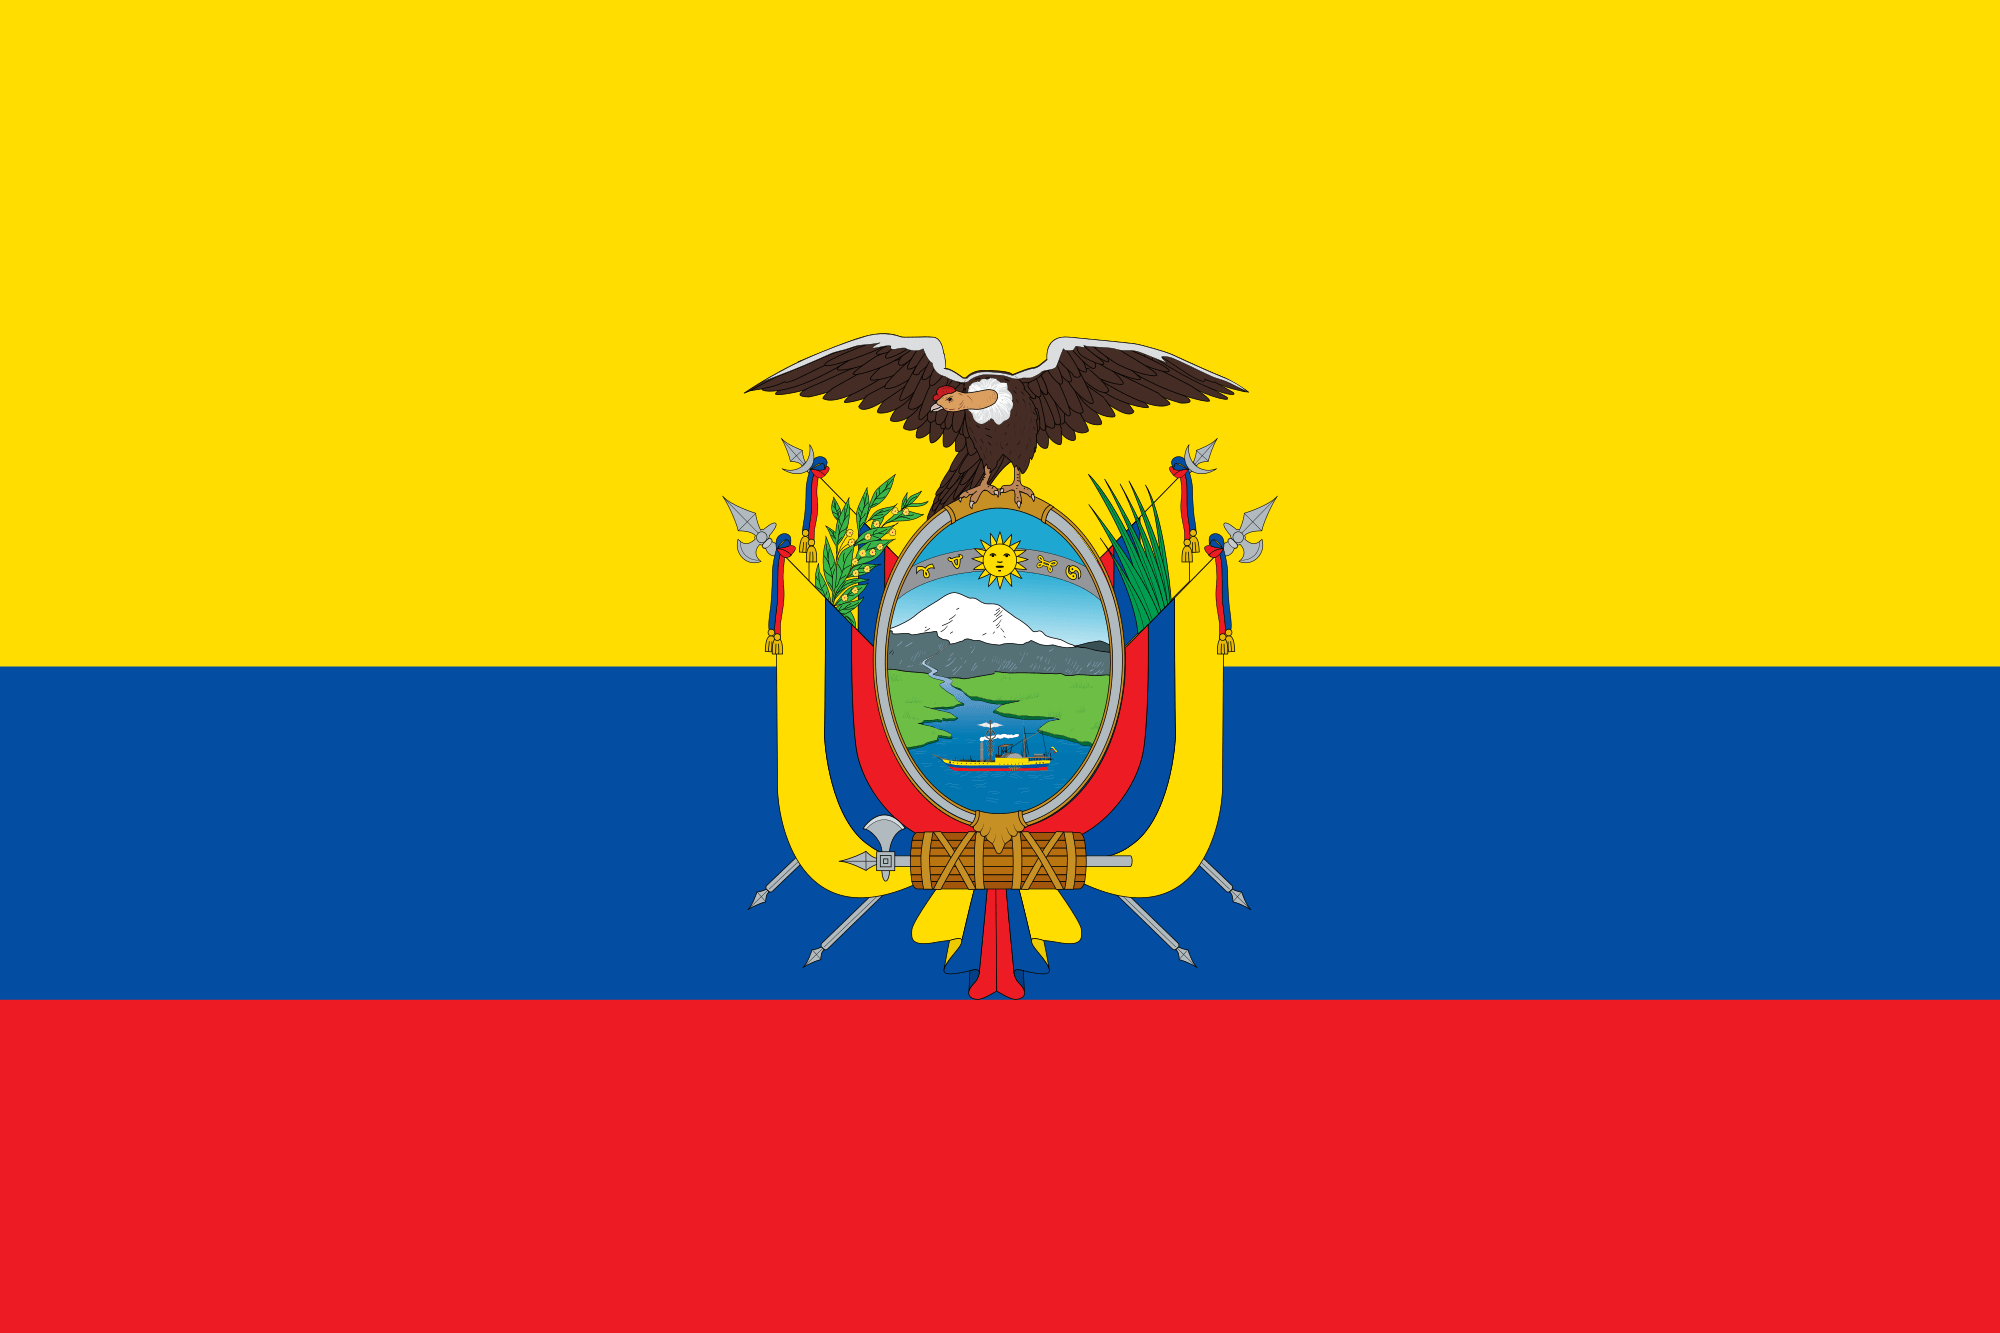 Blue Square Yellow Oval Logo - Flag of Ecuador